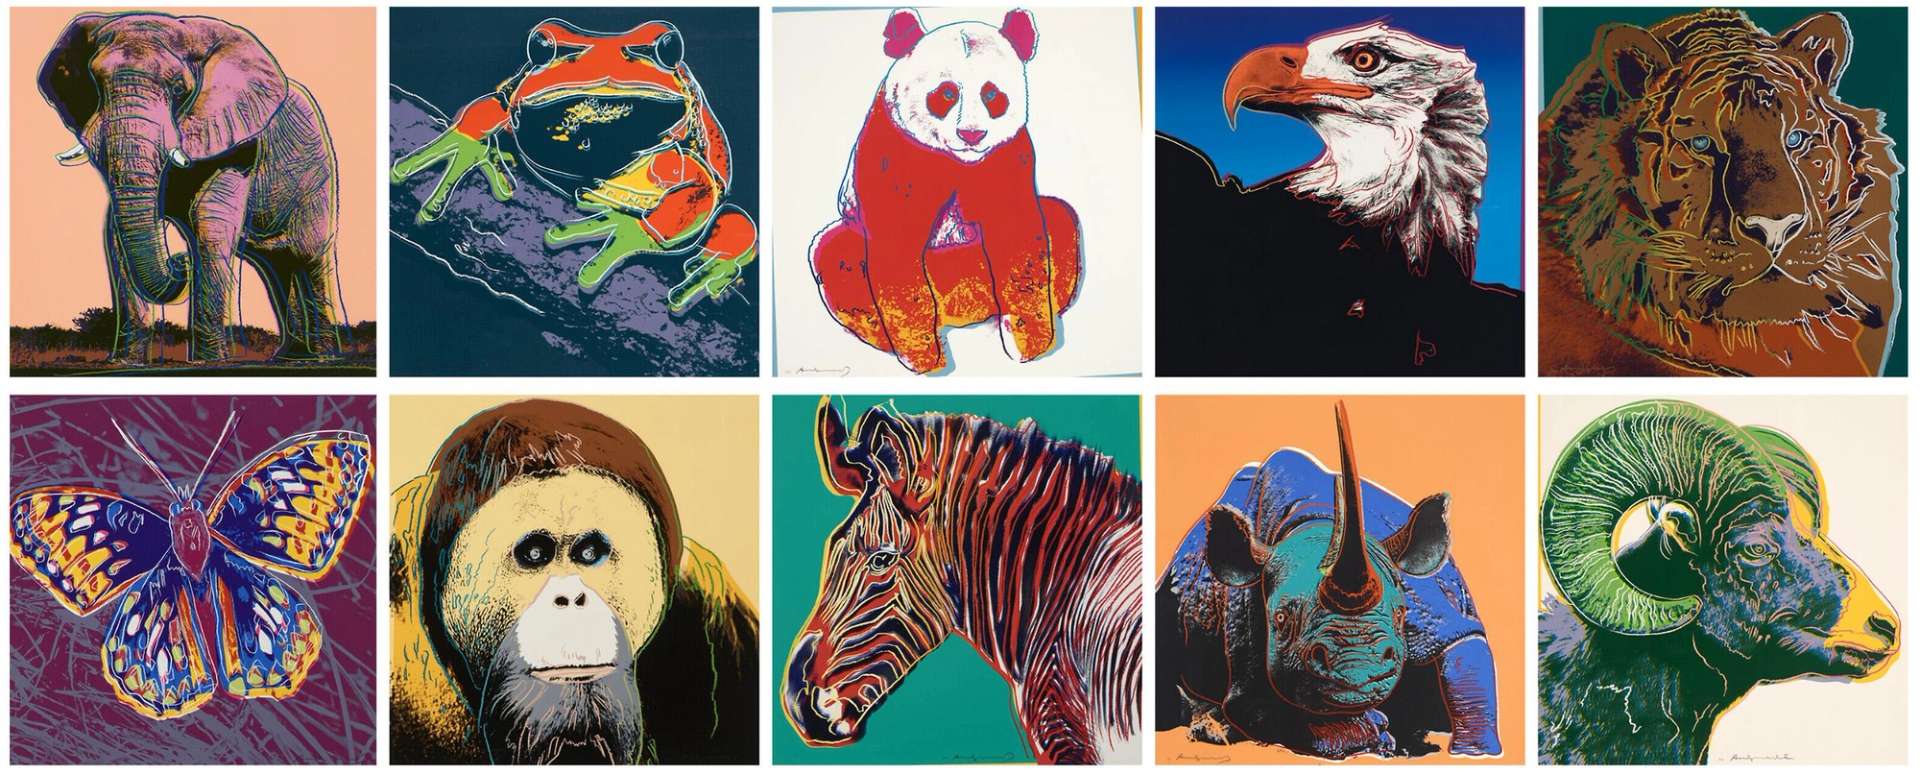 Endangered Species by Andy Warhol - MyArtBroker 